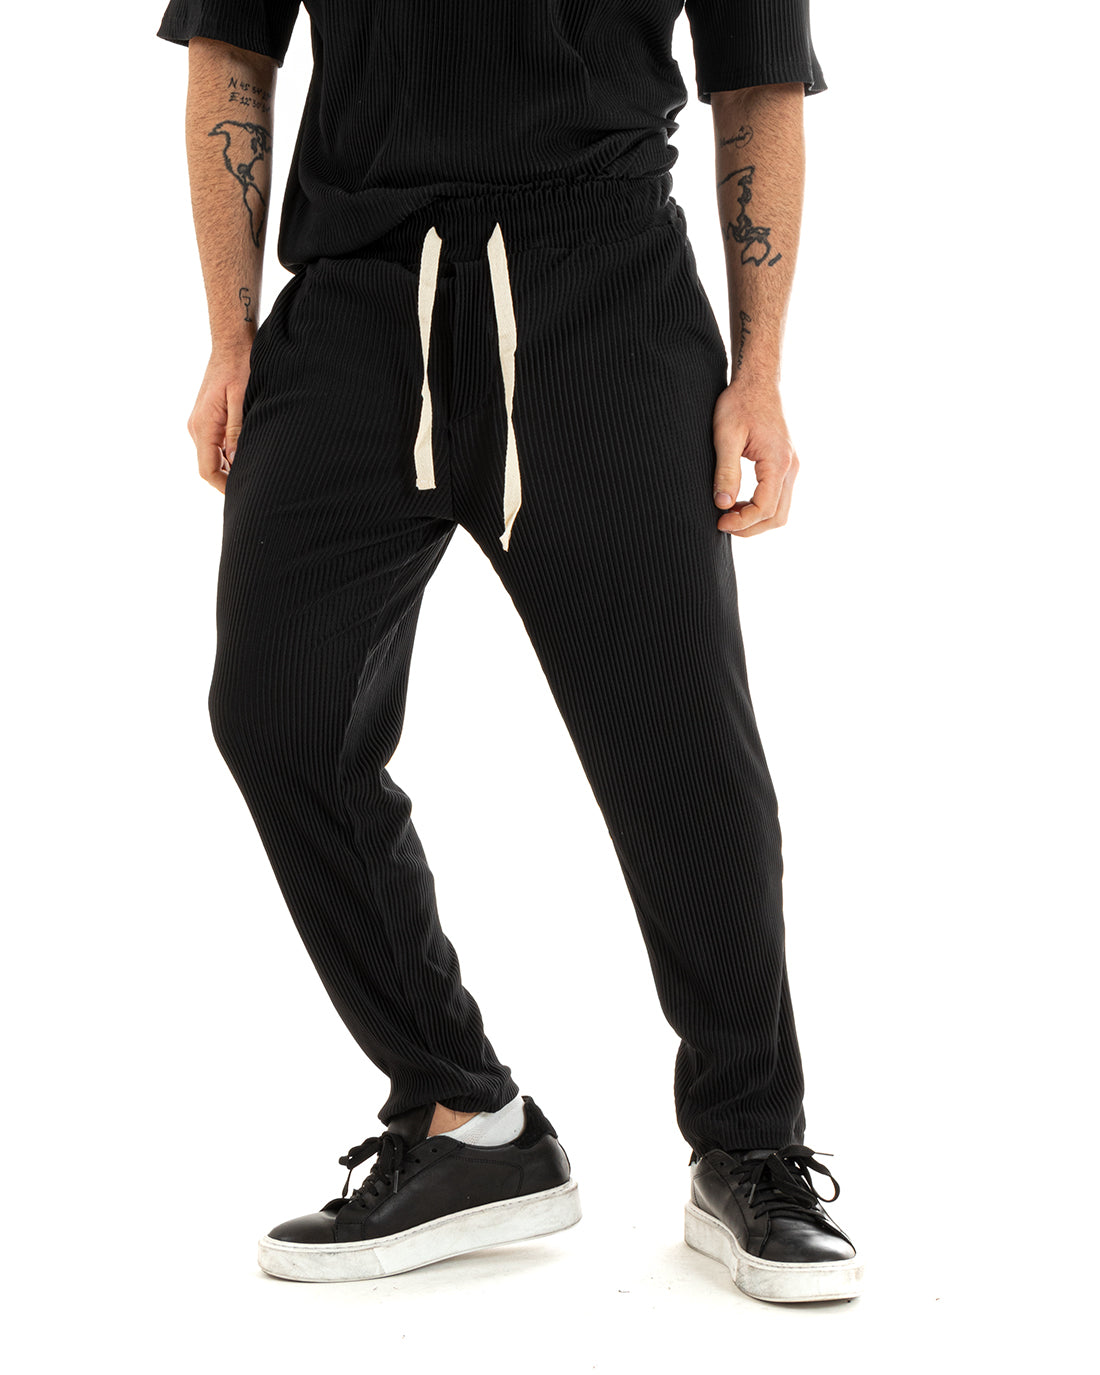 Completo Set Coordinato Uomo Viscosa Plissè T-Shirt Pantaloni Outfit Nero GIOSAL-OU2285A